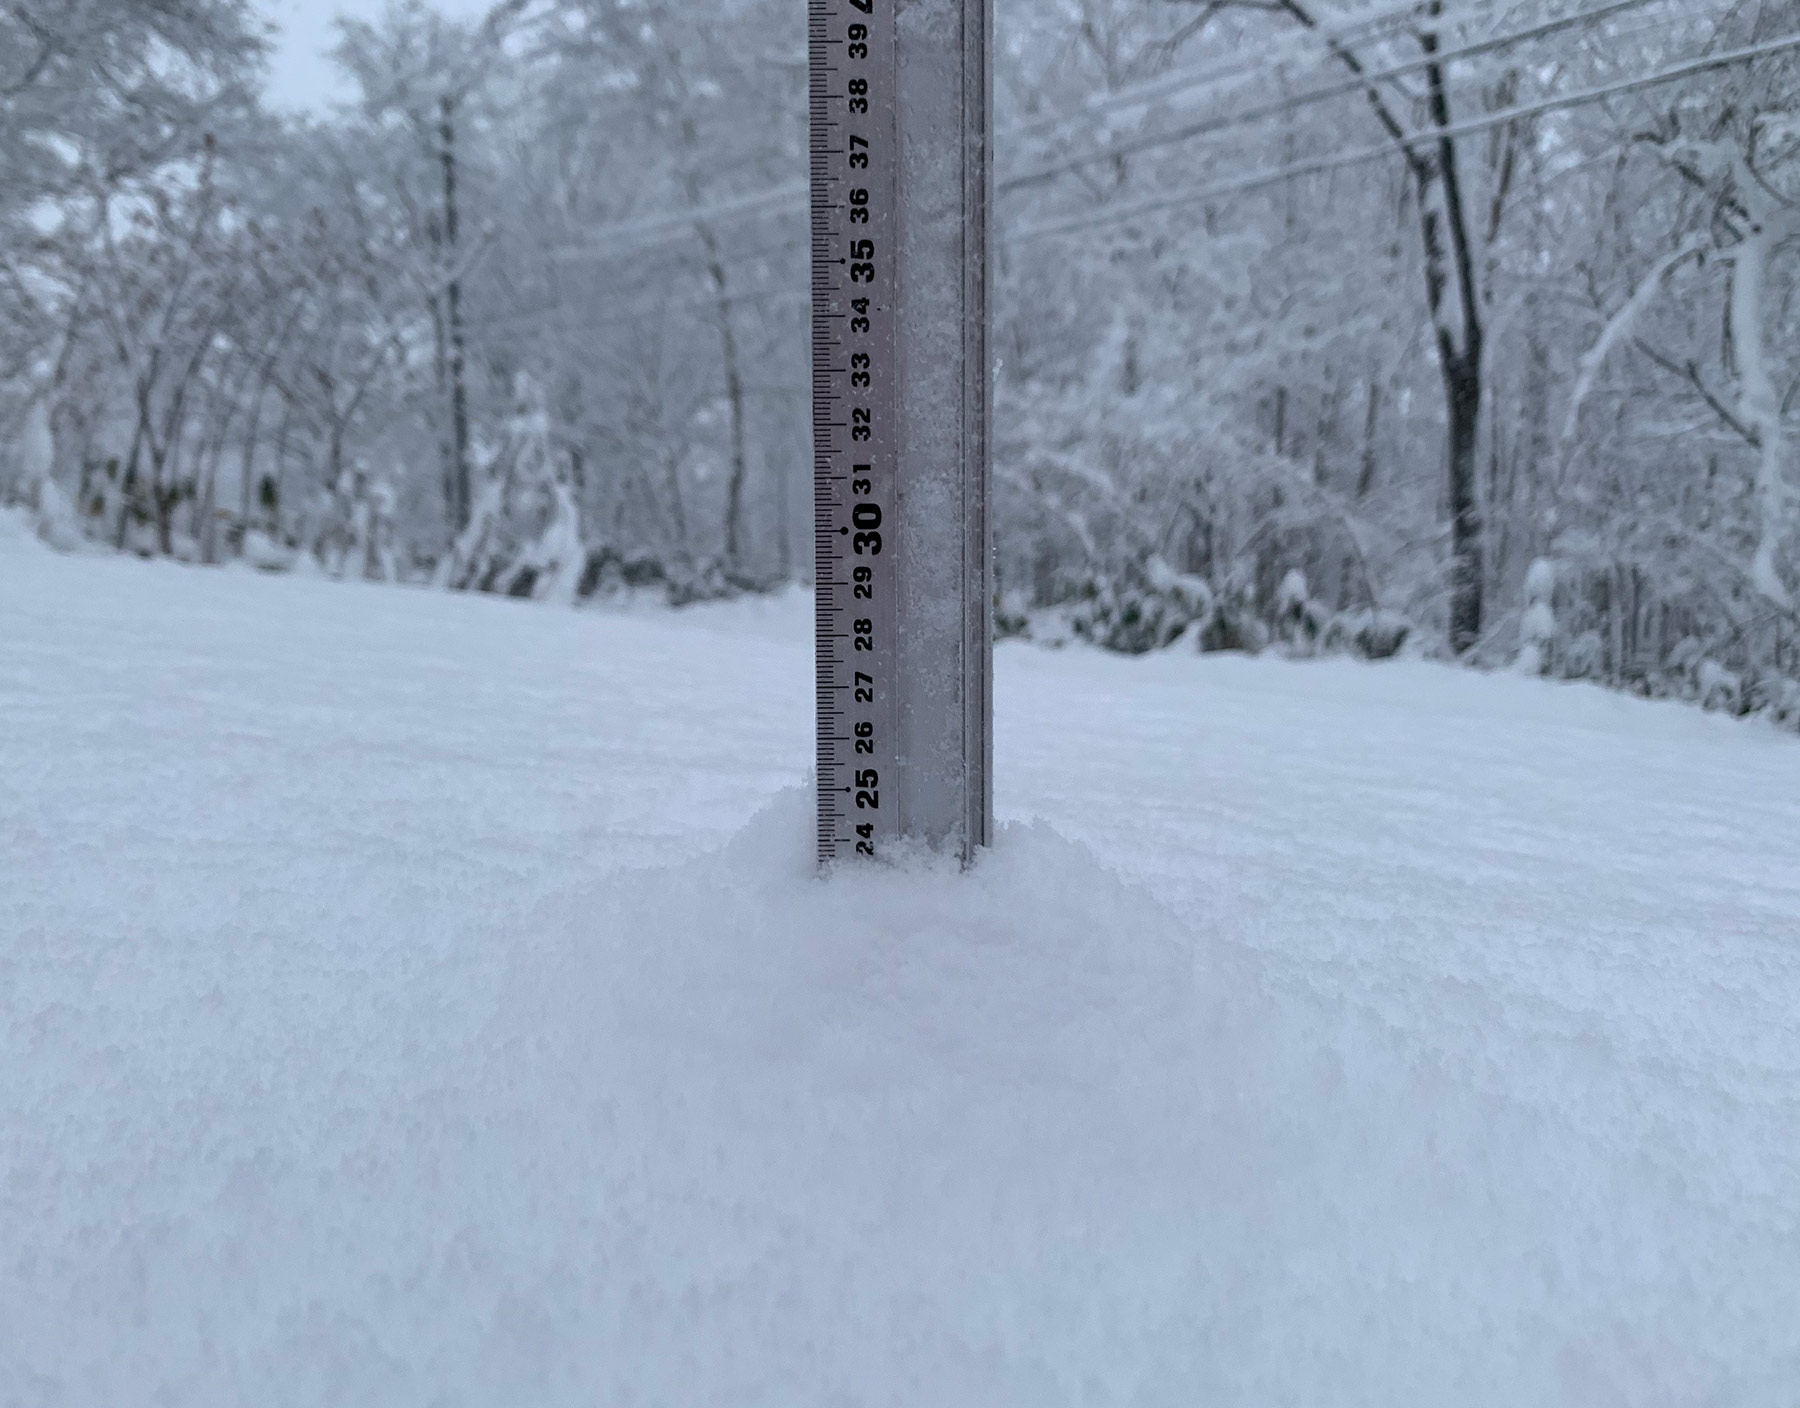 Niseko Snow Report, 6 December 2019